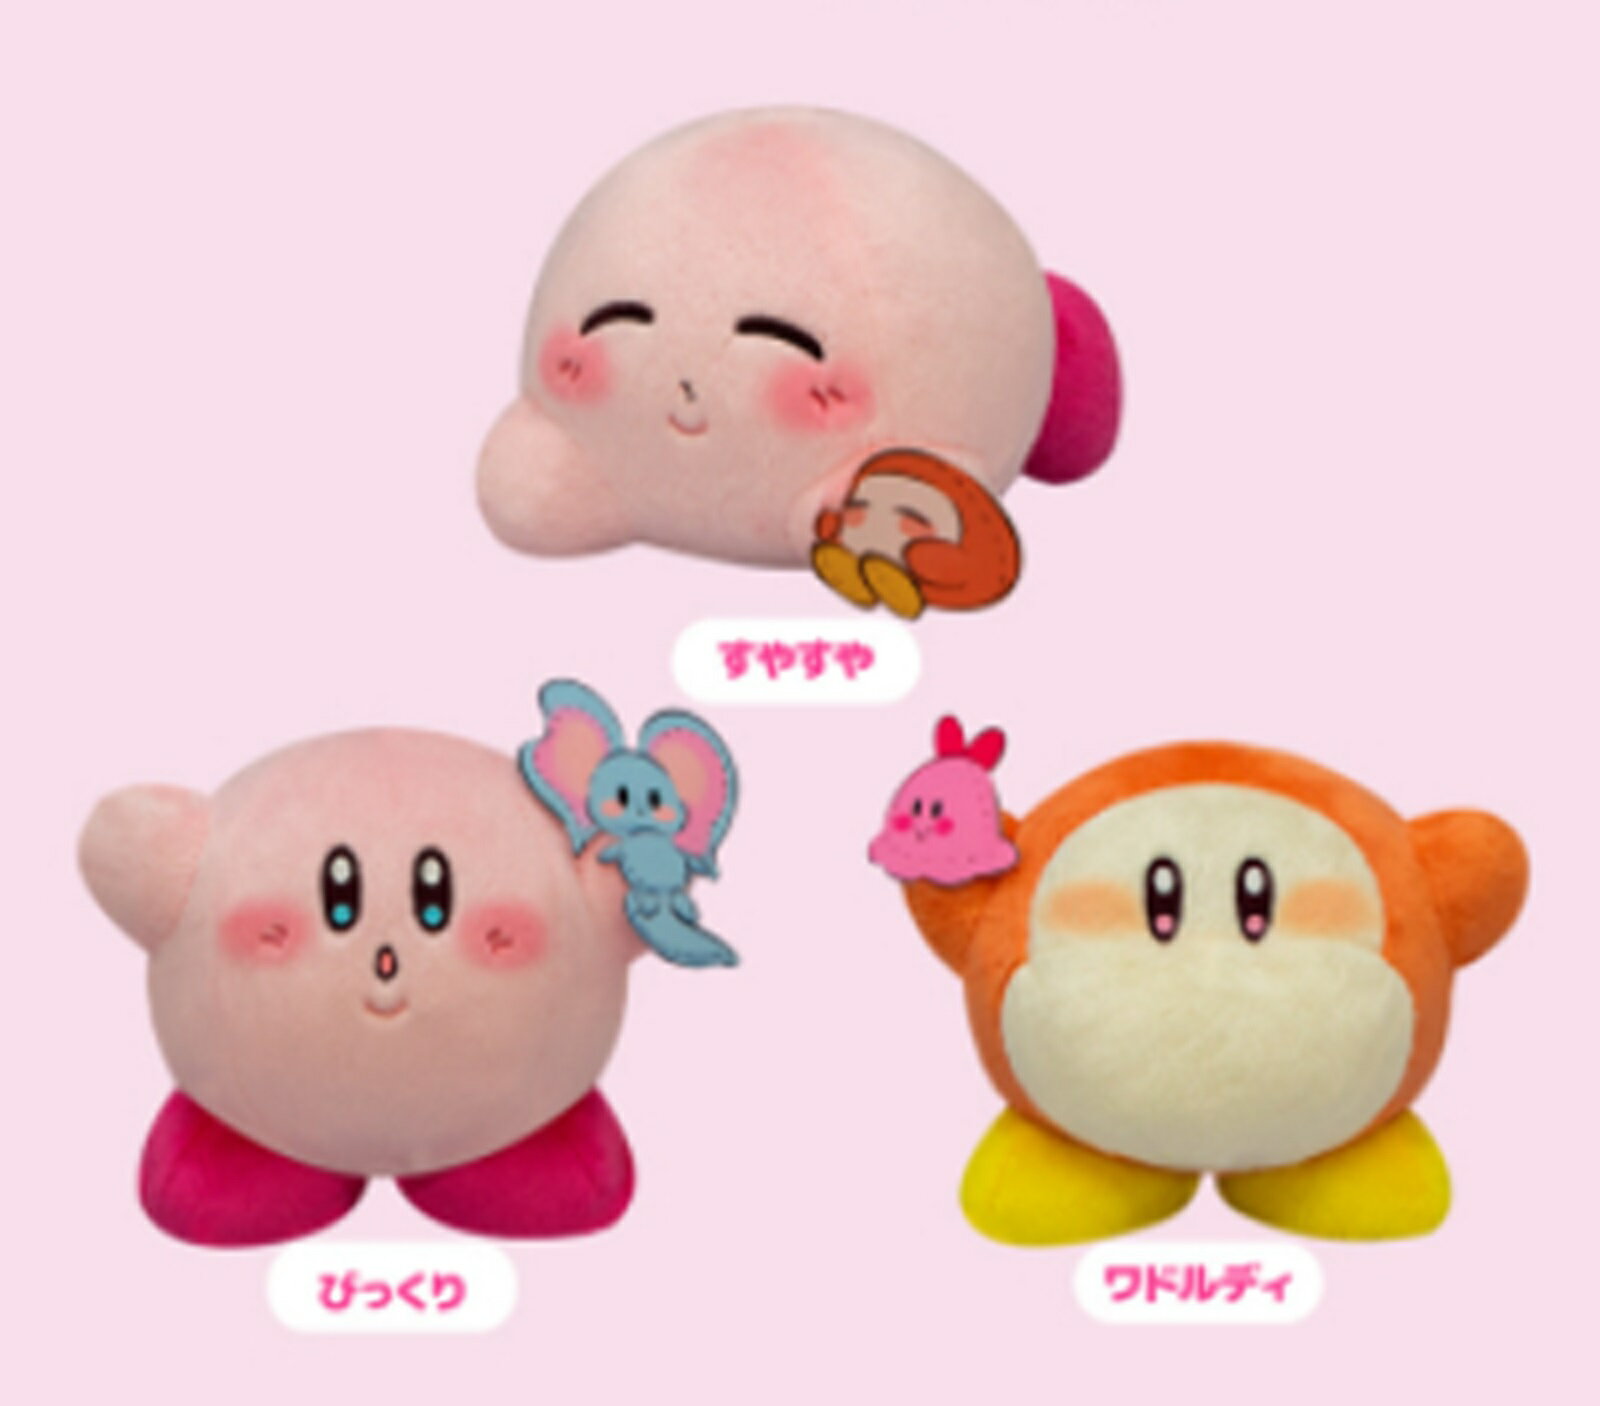 星のカービィ Kirby×Dr.MORICKY ぬいぐるみ Happy Days すやすや びっくり ワドルディ 3種セット